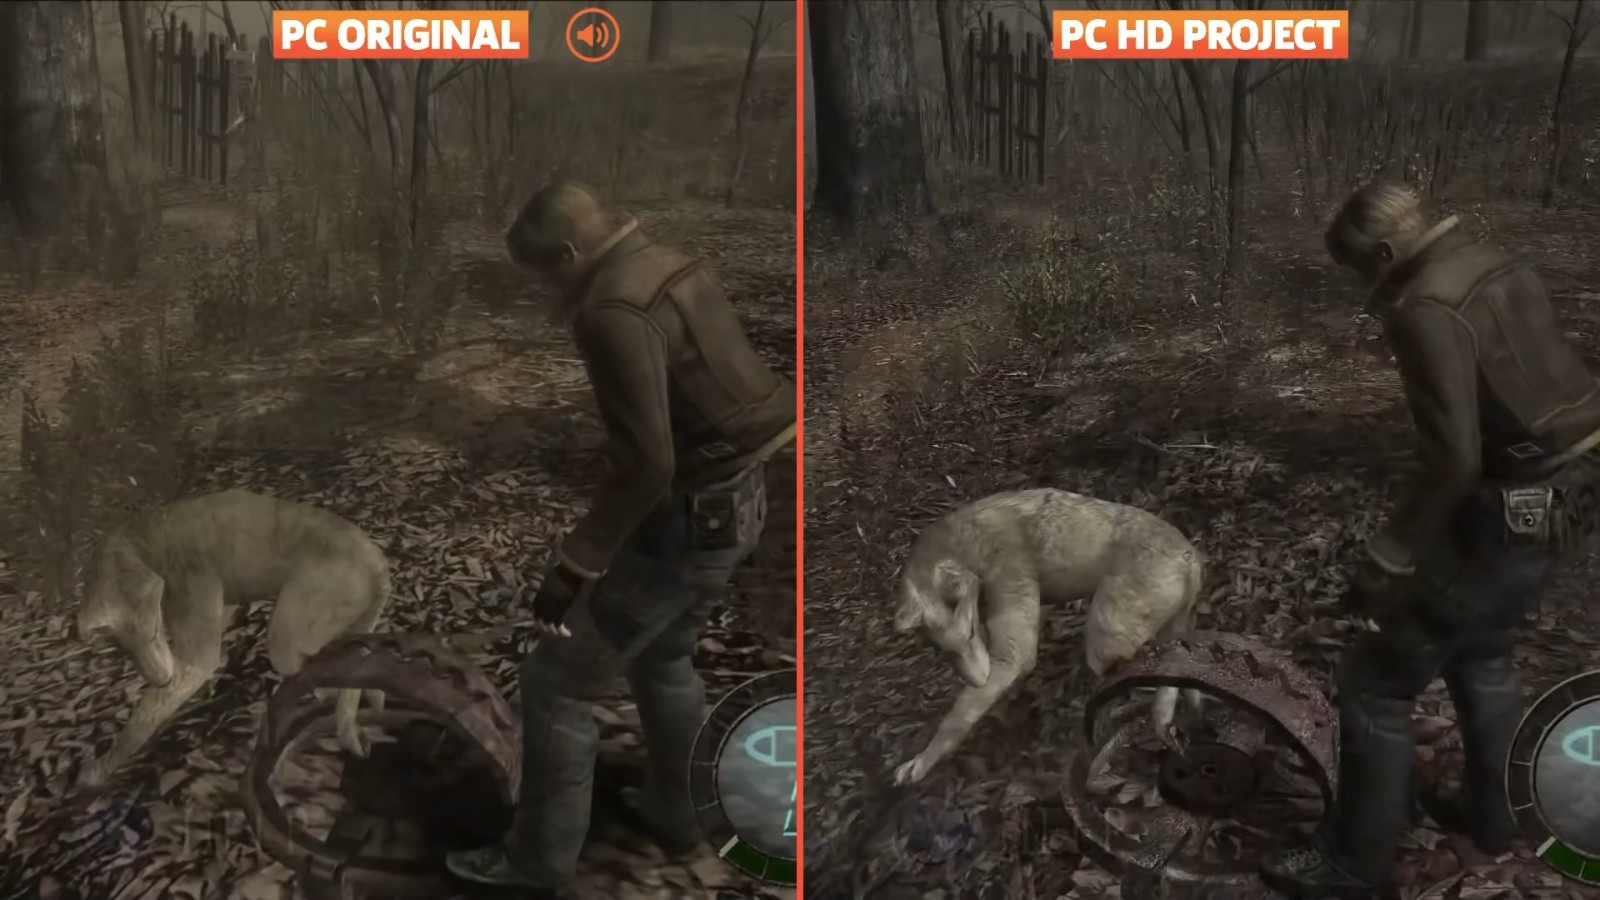 《生化危機4》高清畫質MOD對比PC原版效果演示